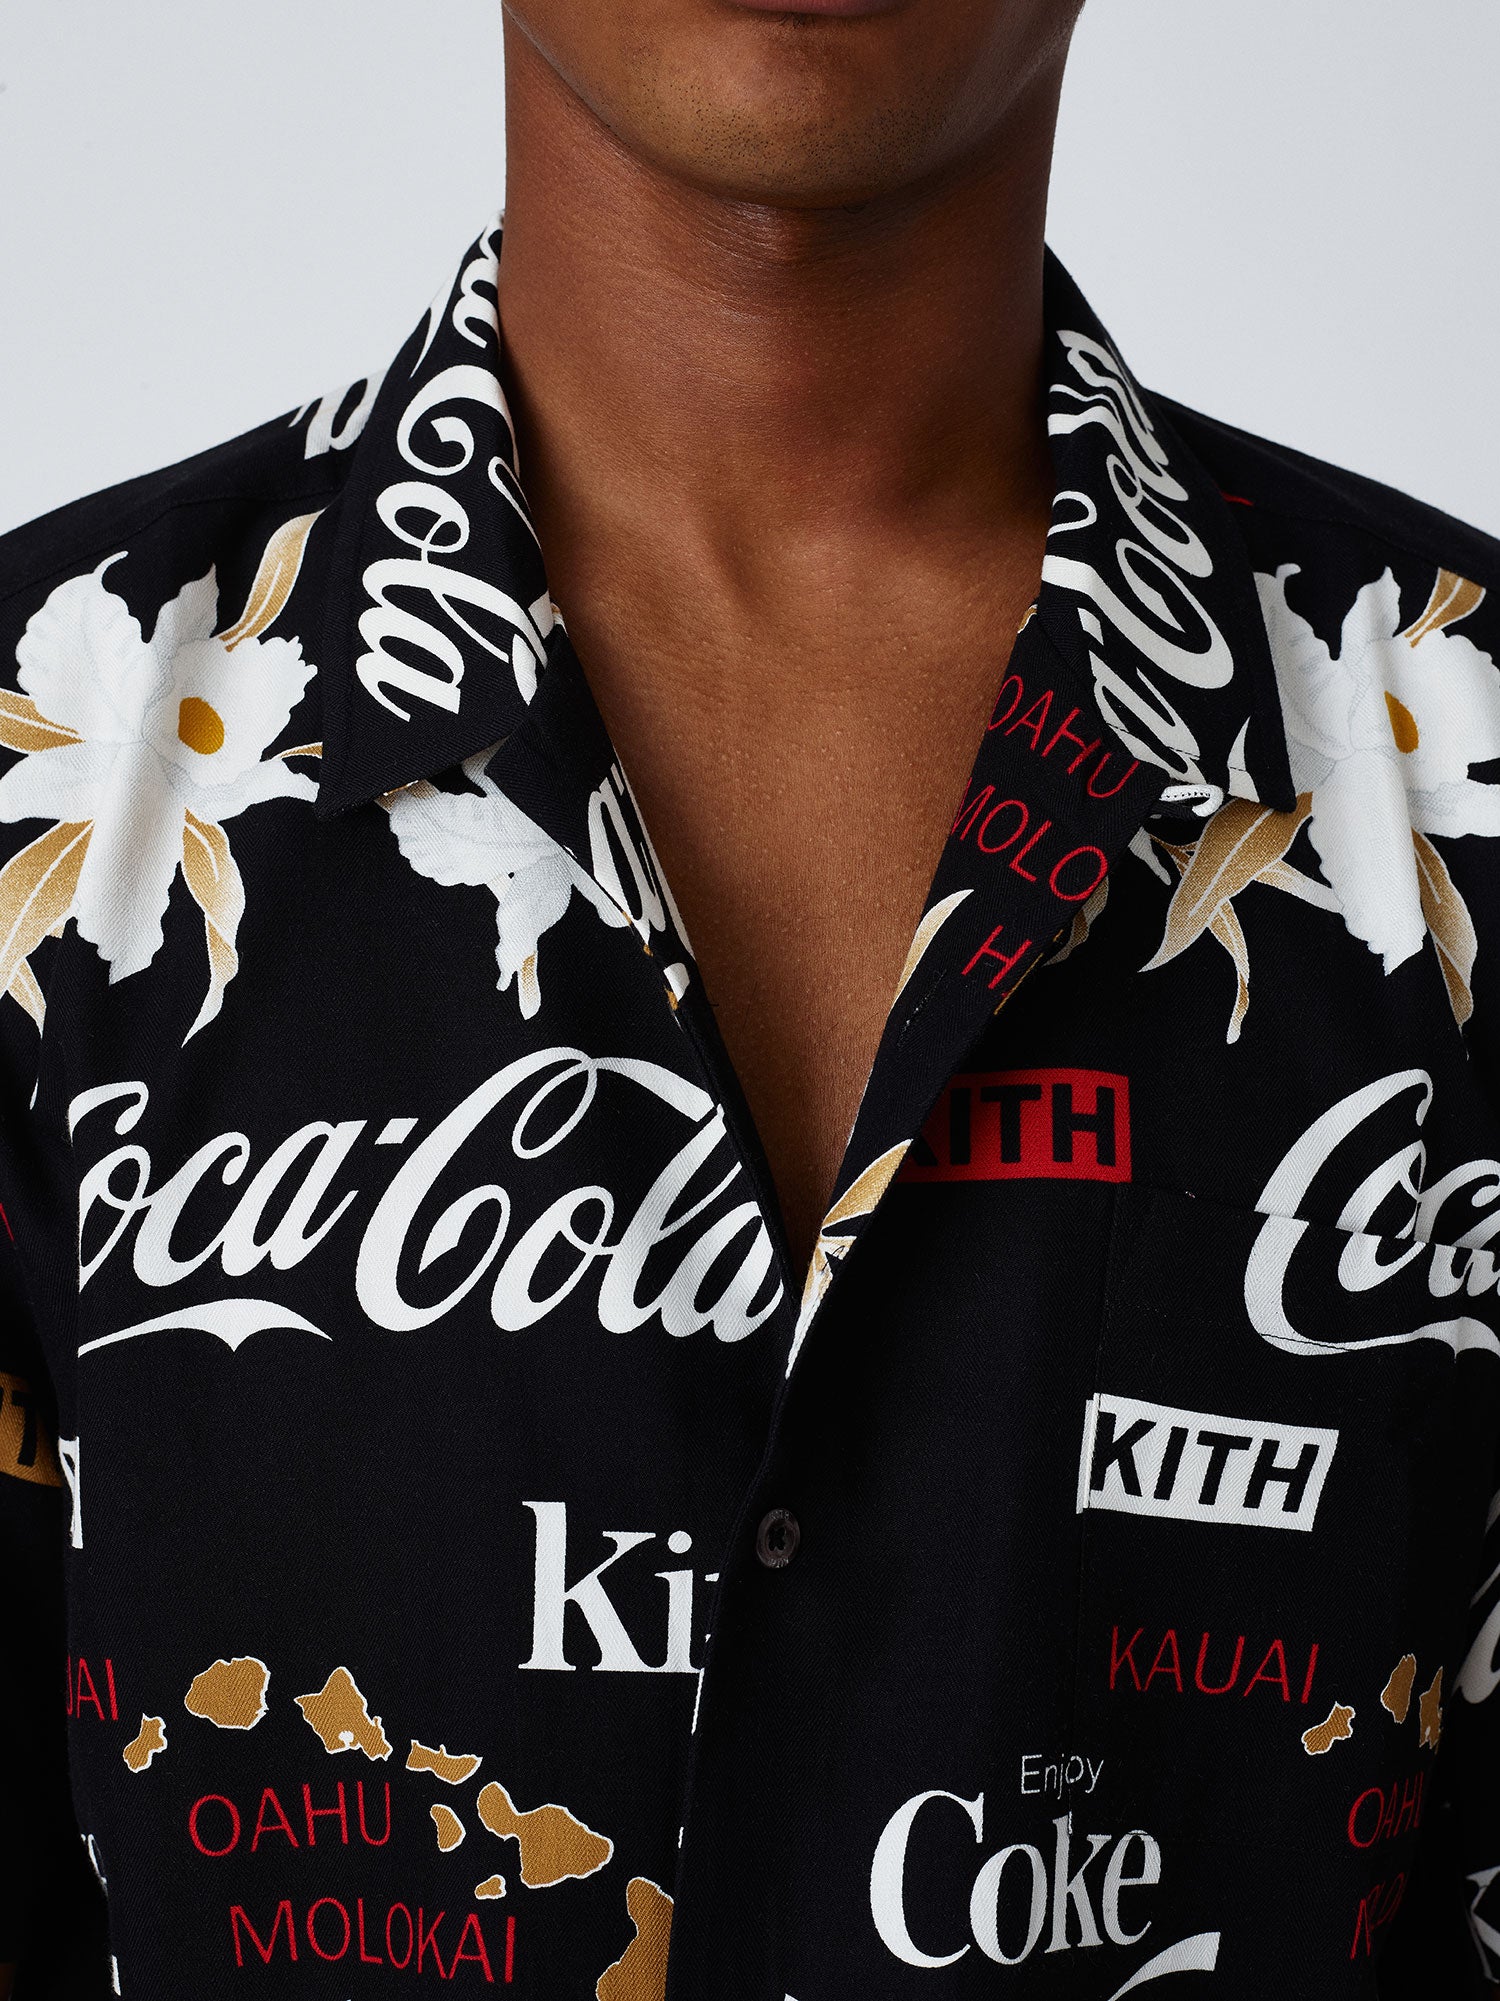 【キャンプサ】 Supreme - kith x coca cola sarf camp callar shirtの アロハアロ